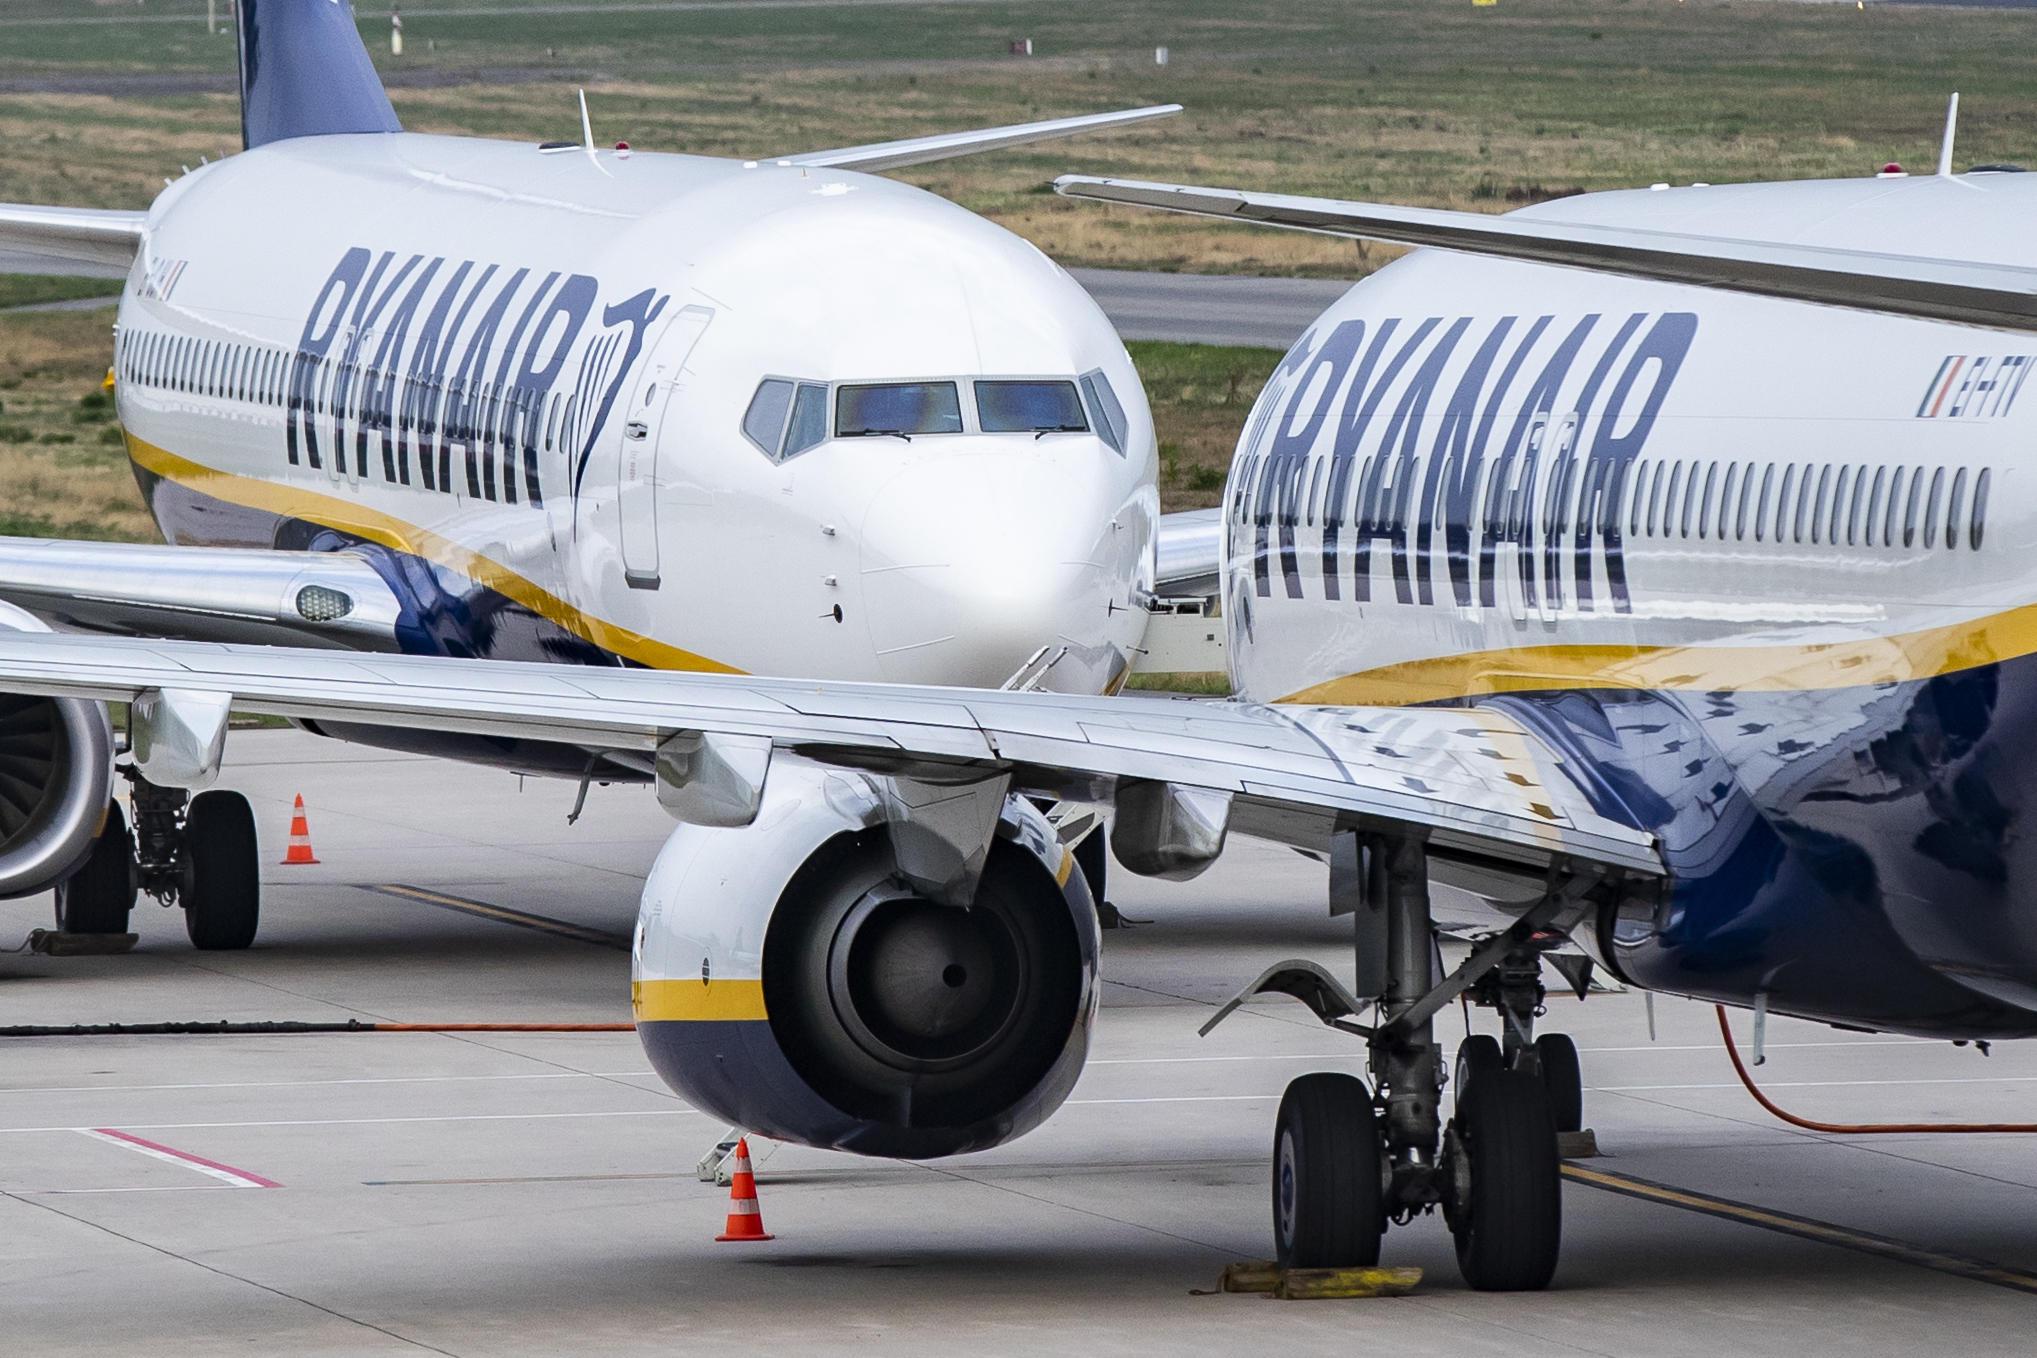 Ryanair, confermato sciopero 8 giugno per piloti e assistenti volo